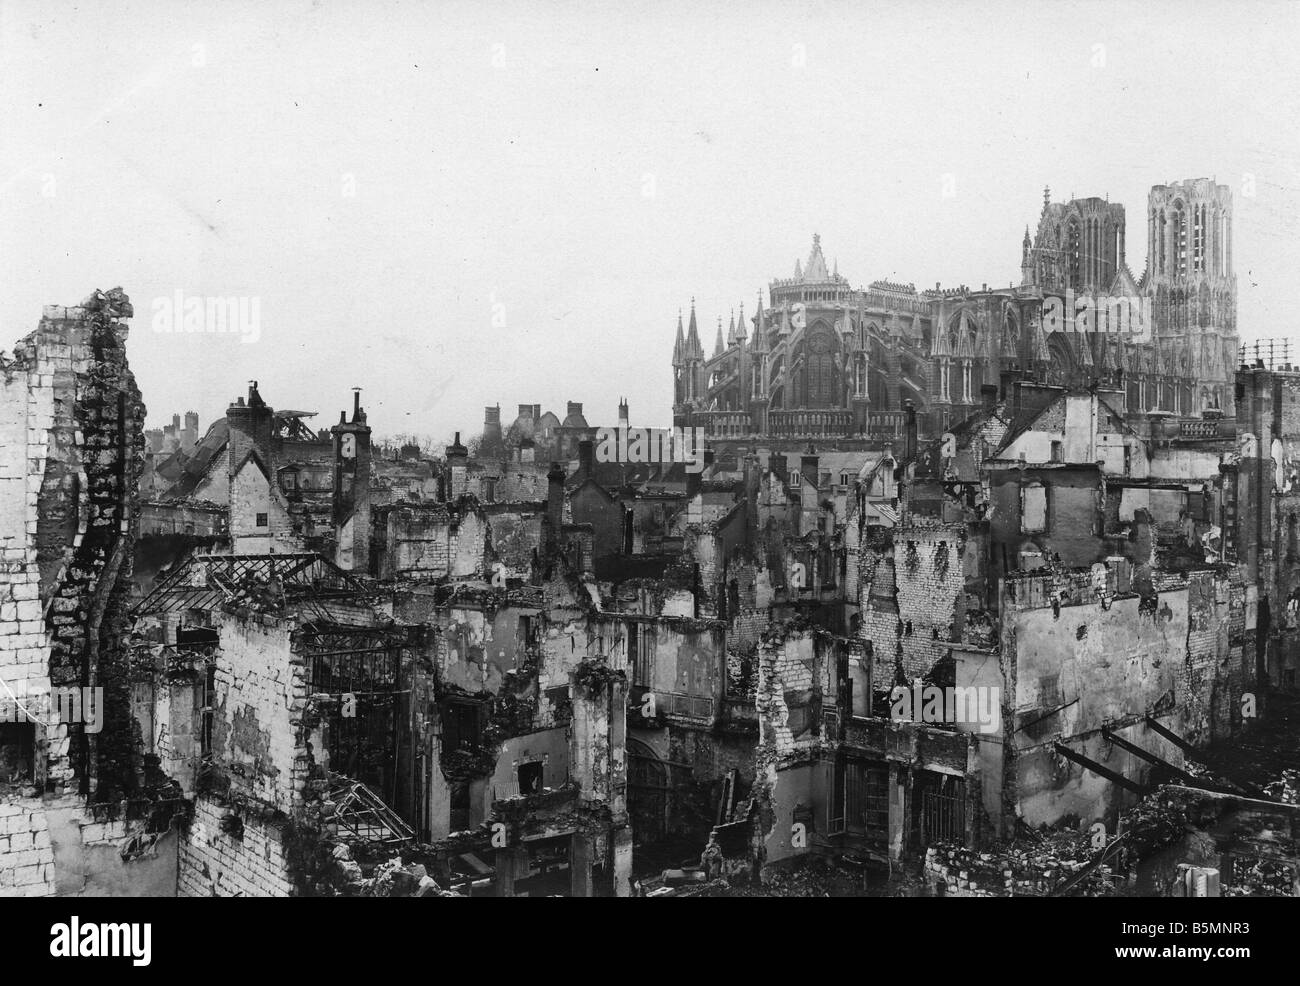 5FK R2 E1 1914 die Kathedrale von Reims Zerstörung 1914 Reims Frankreich Dep Marne Kathedrale Krieg Verwüstung in der Kathedrale von Reims nach bombar Stockfoto